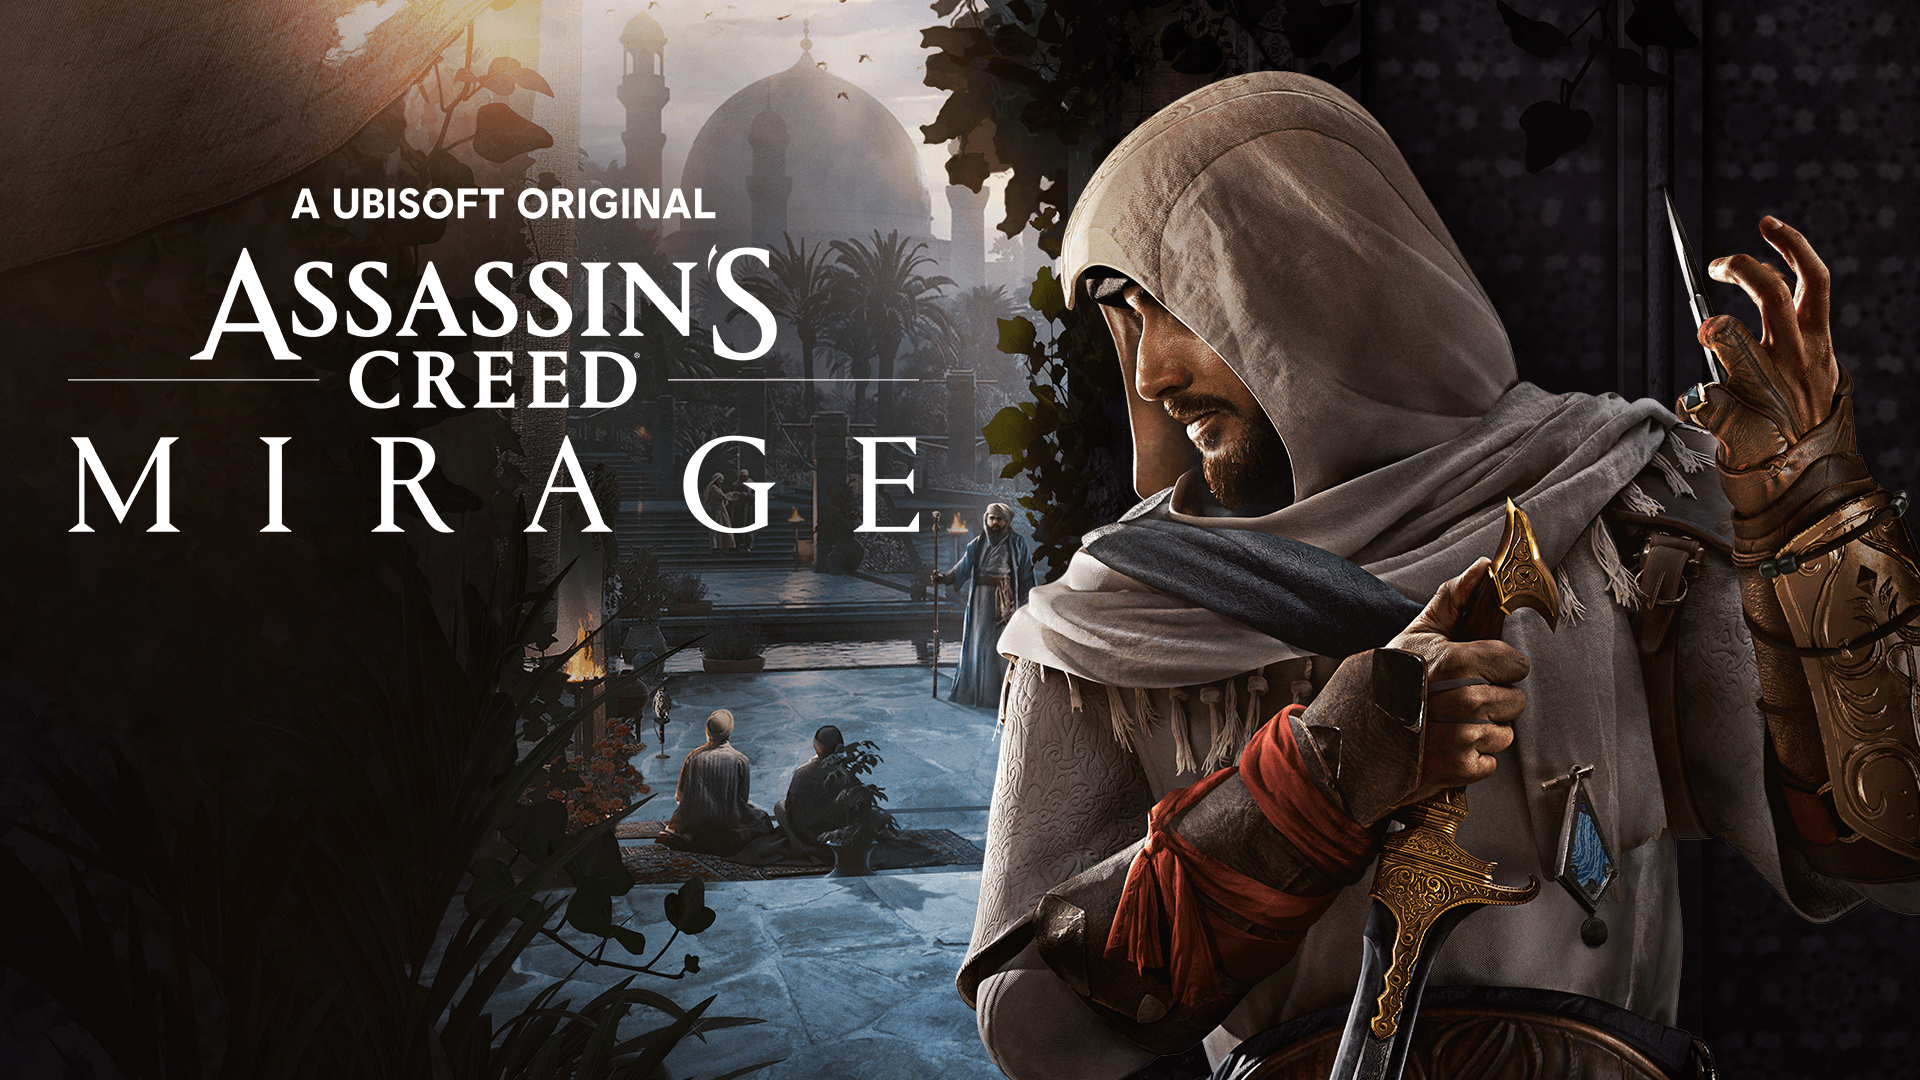 אמנות המיראז' של Assassin's Creed